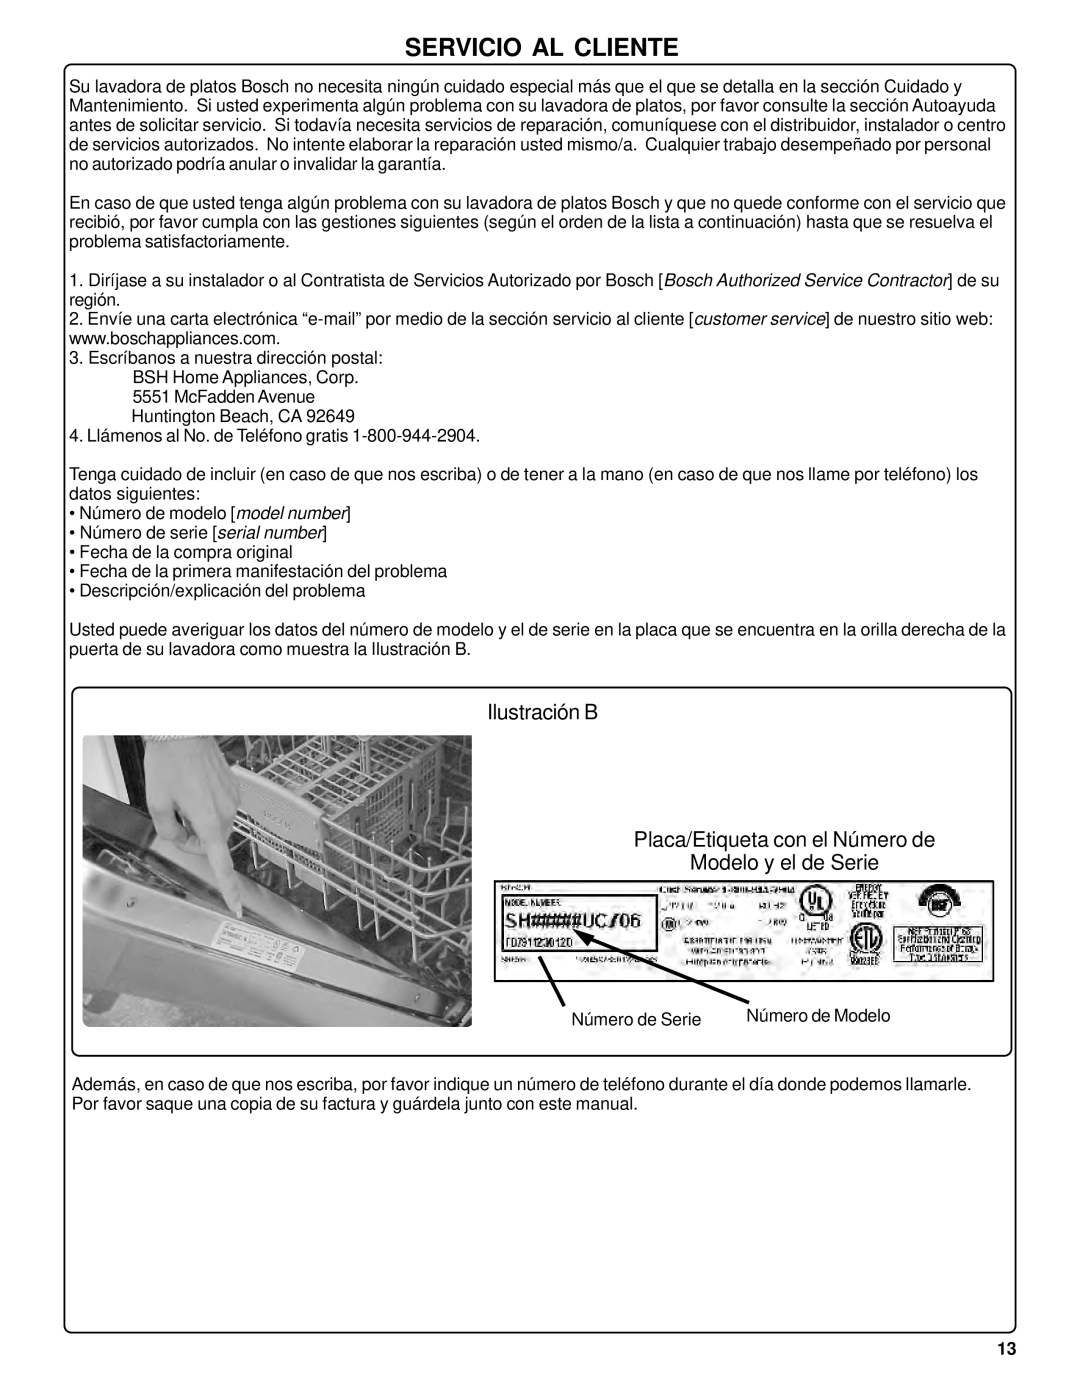 Bosch Appliances SHU42L manual Servicio Al Cliente, Ilustración B Placa/Etiqueta con el Número de Modelo y el de Serie 